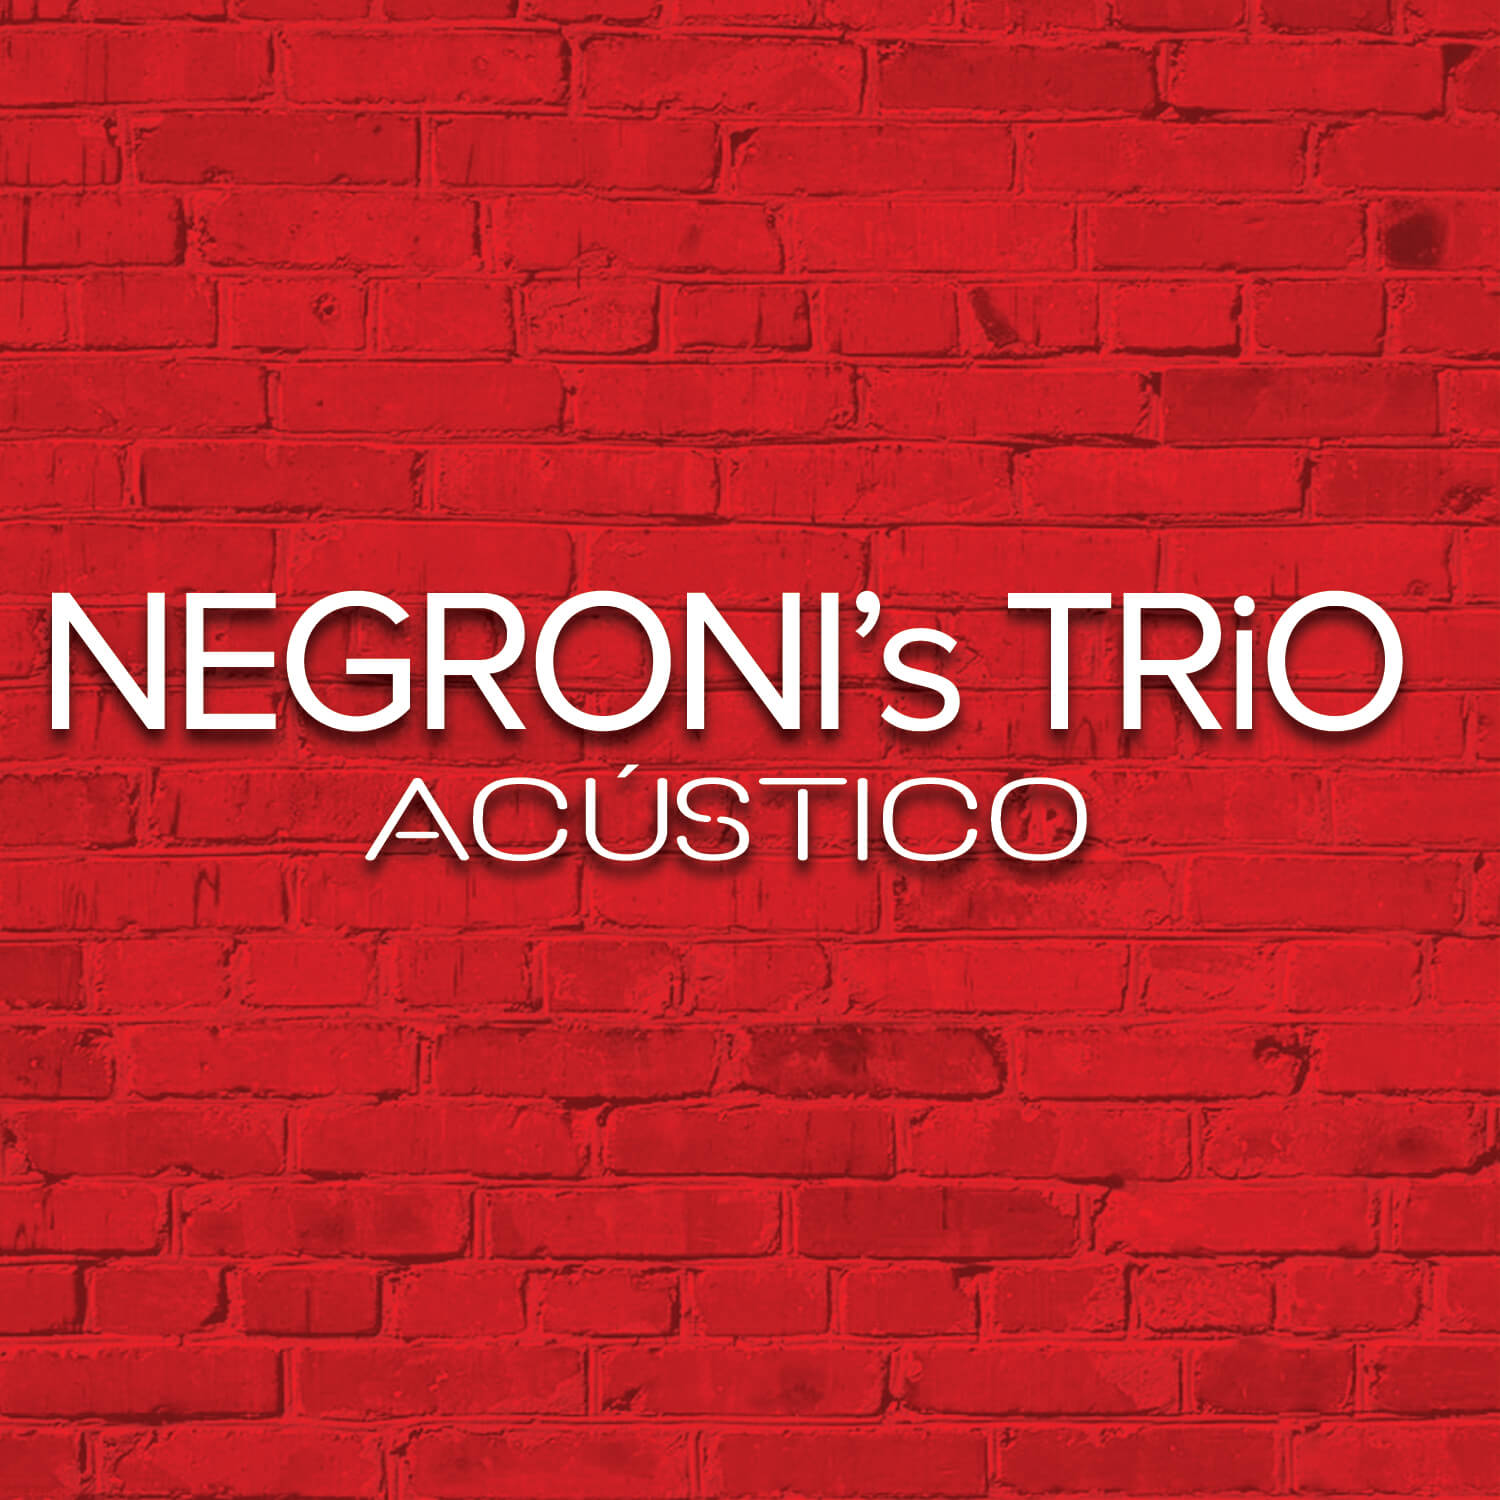 Super seductive jazz trio Negroni's Trio